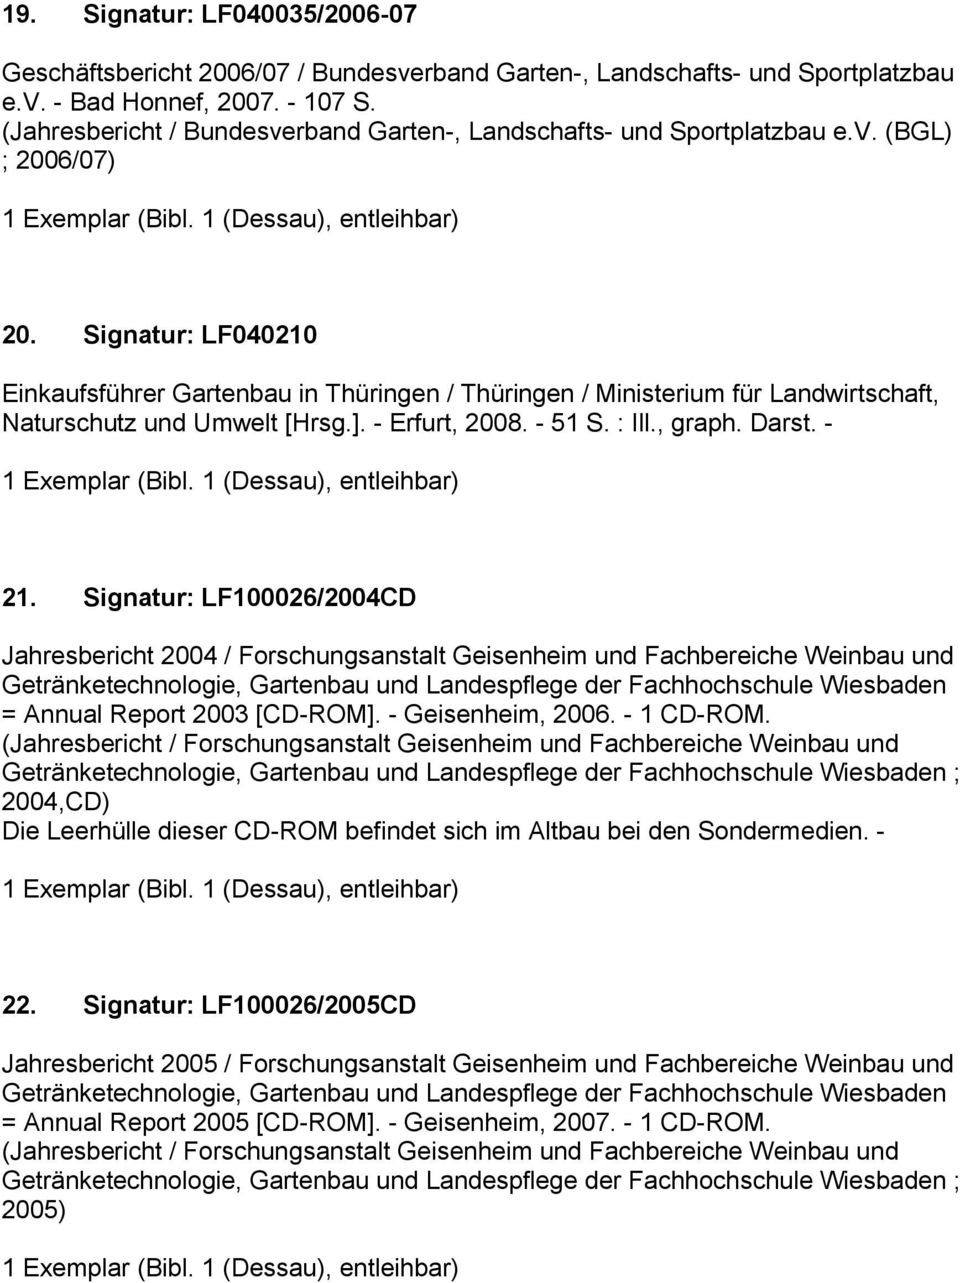 Signatur: LF040210 Einkaufsführer Gartenbau in Thüringen / Thüringen / Ministerium für Landwirtschaft, Naturschutz und Umwelt [Hrsg.]. - Erfurt, 2008. - 51 S. : Ill., graph. Darst. - 21.